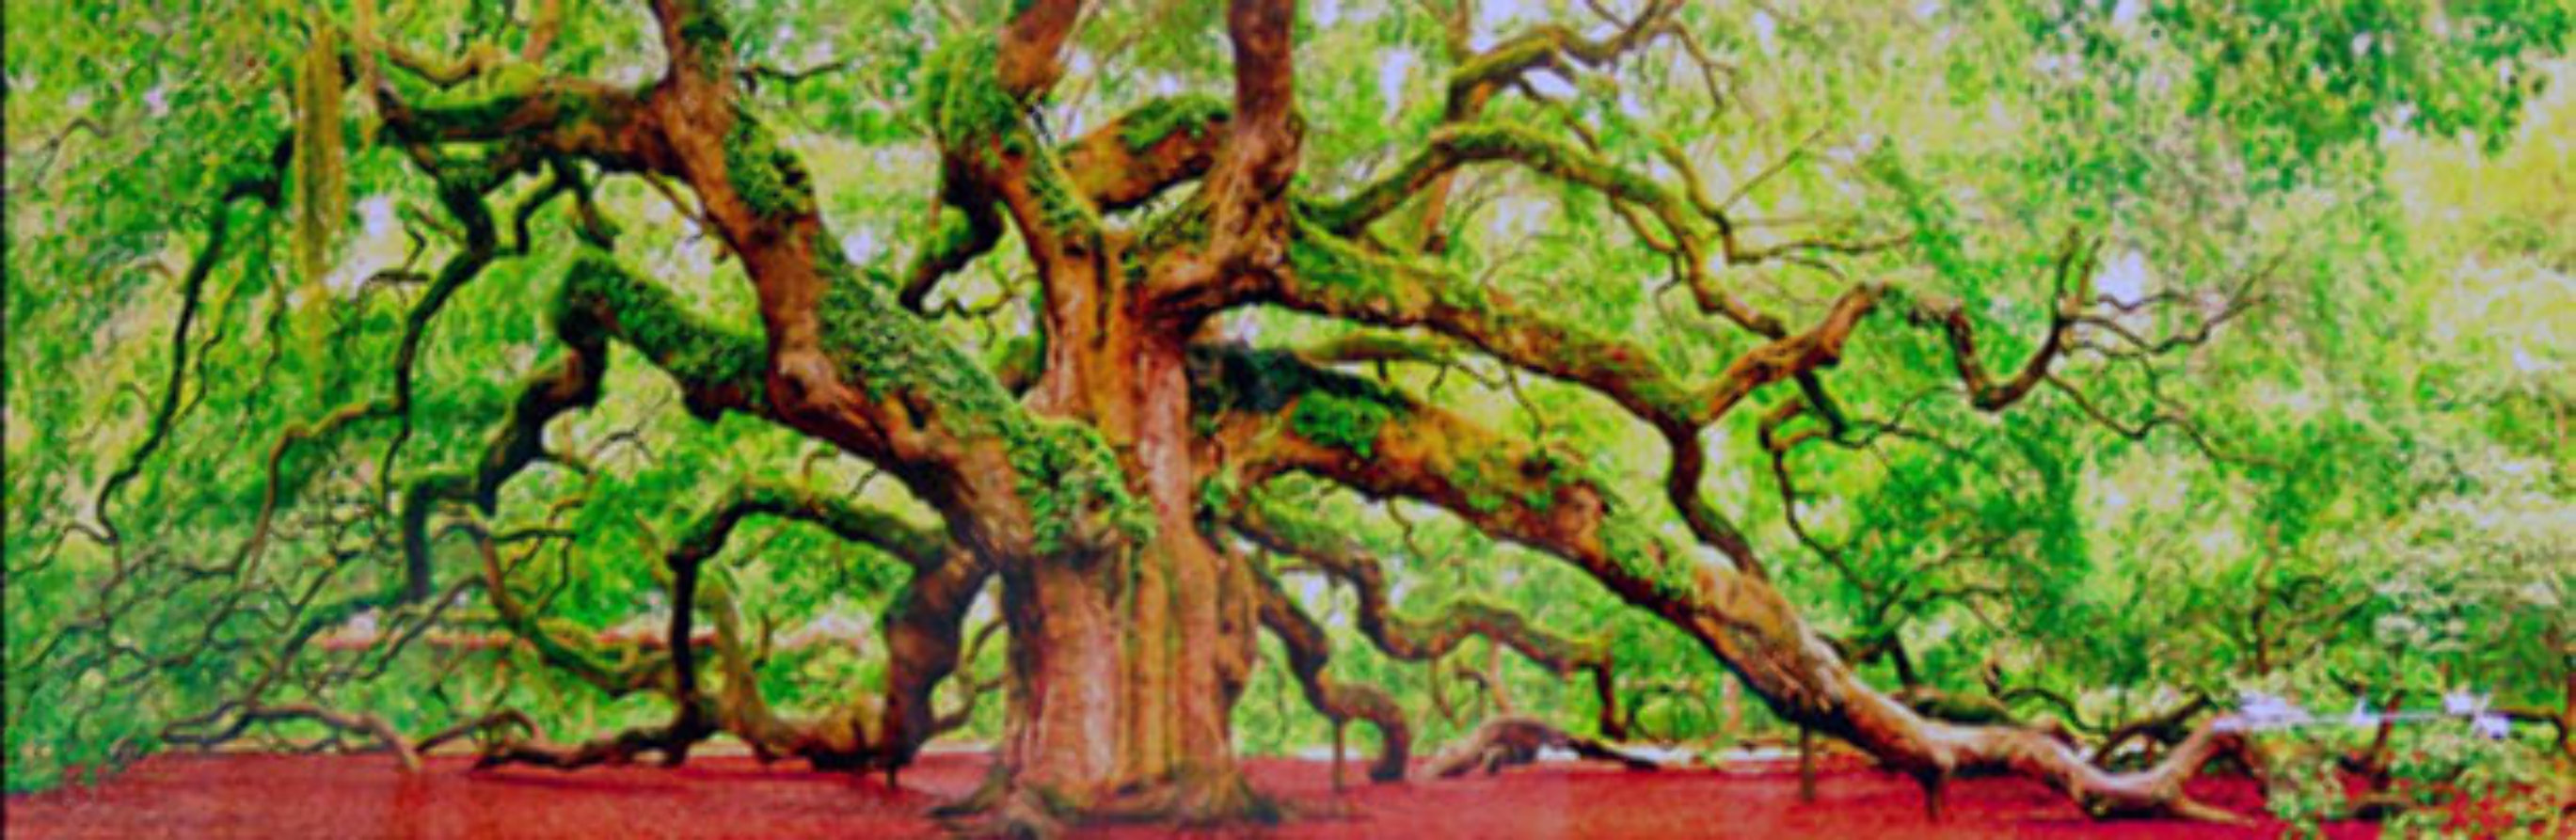 Tree of Hope 1.5M Huge Panorama by Peter Lik